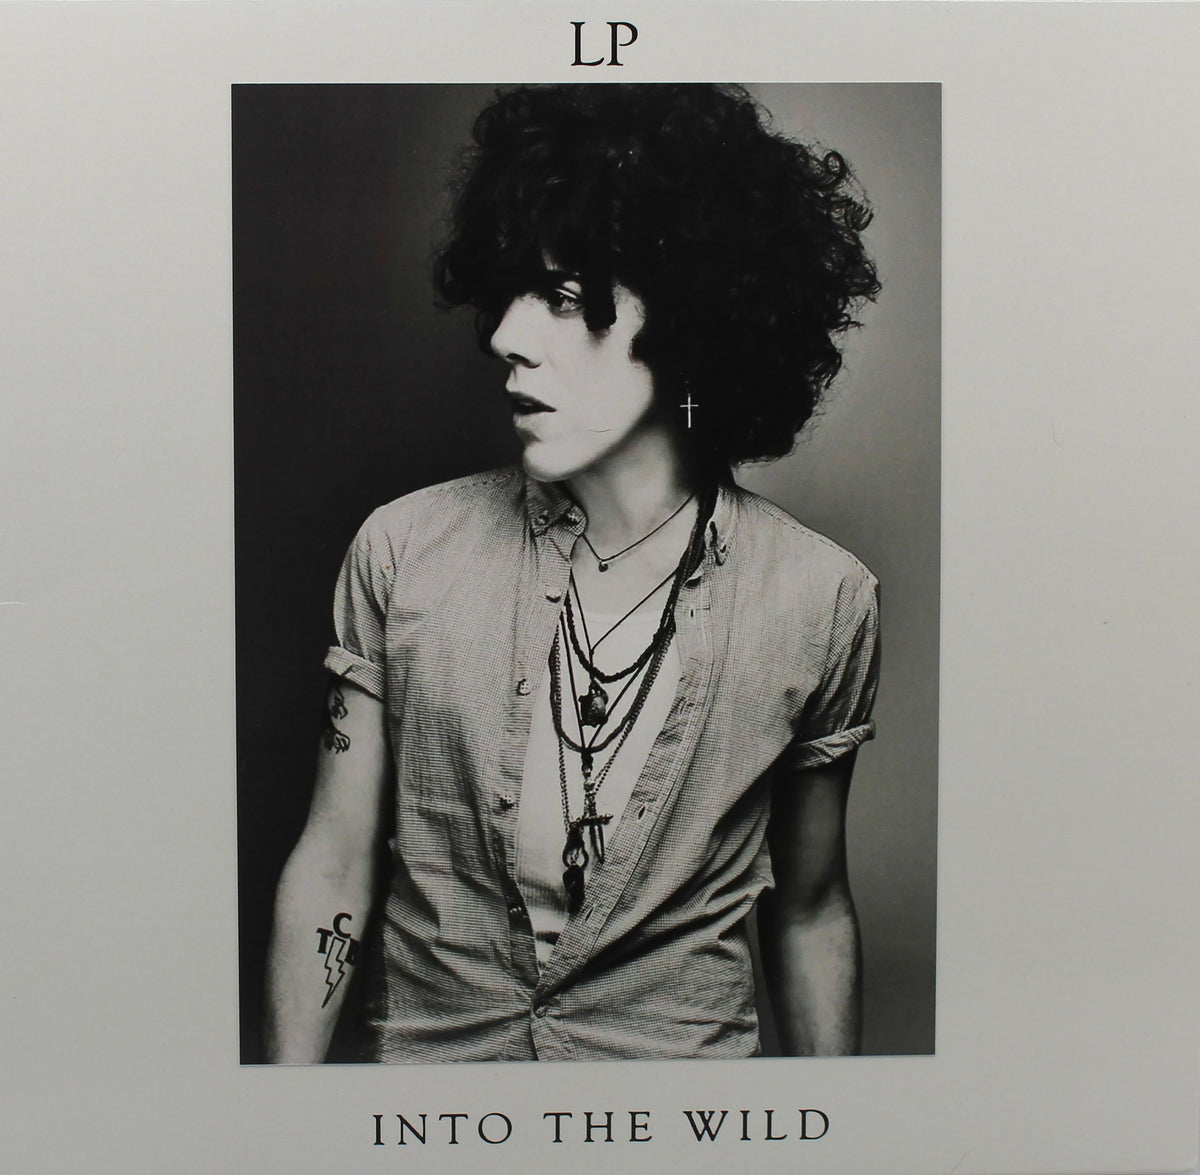 Laura Pergolizzi, L.P. – Into The Wild, Vinyl Maxi Single, 2012